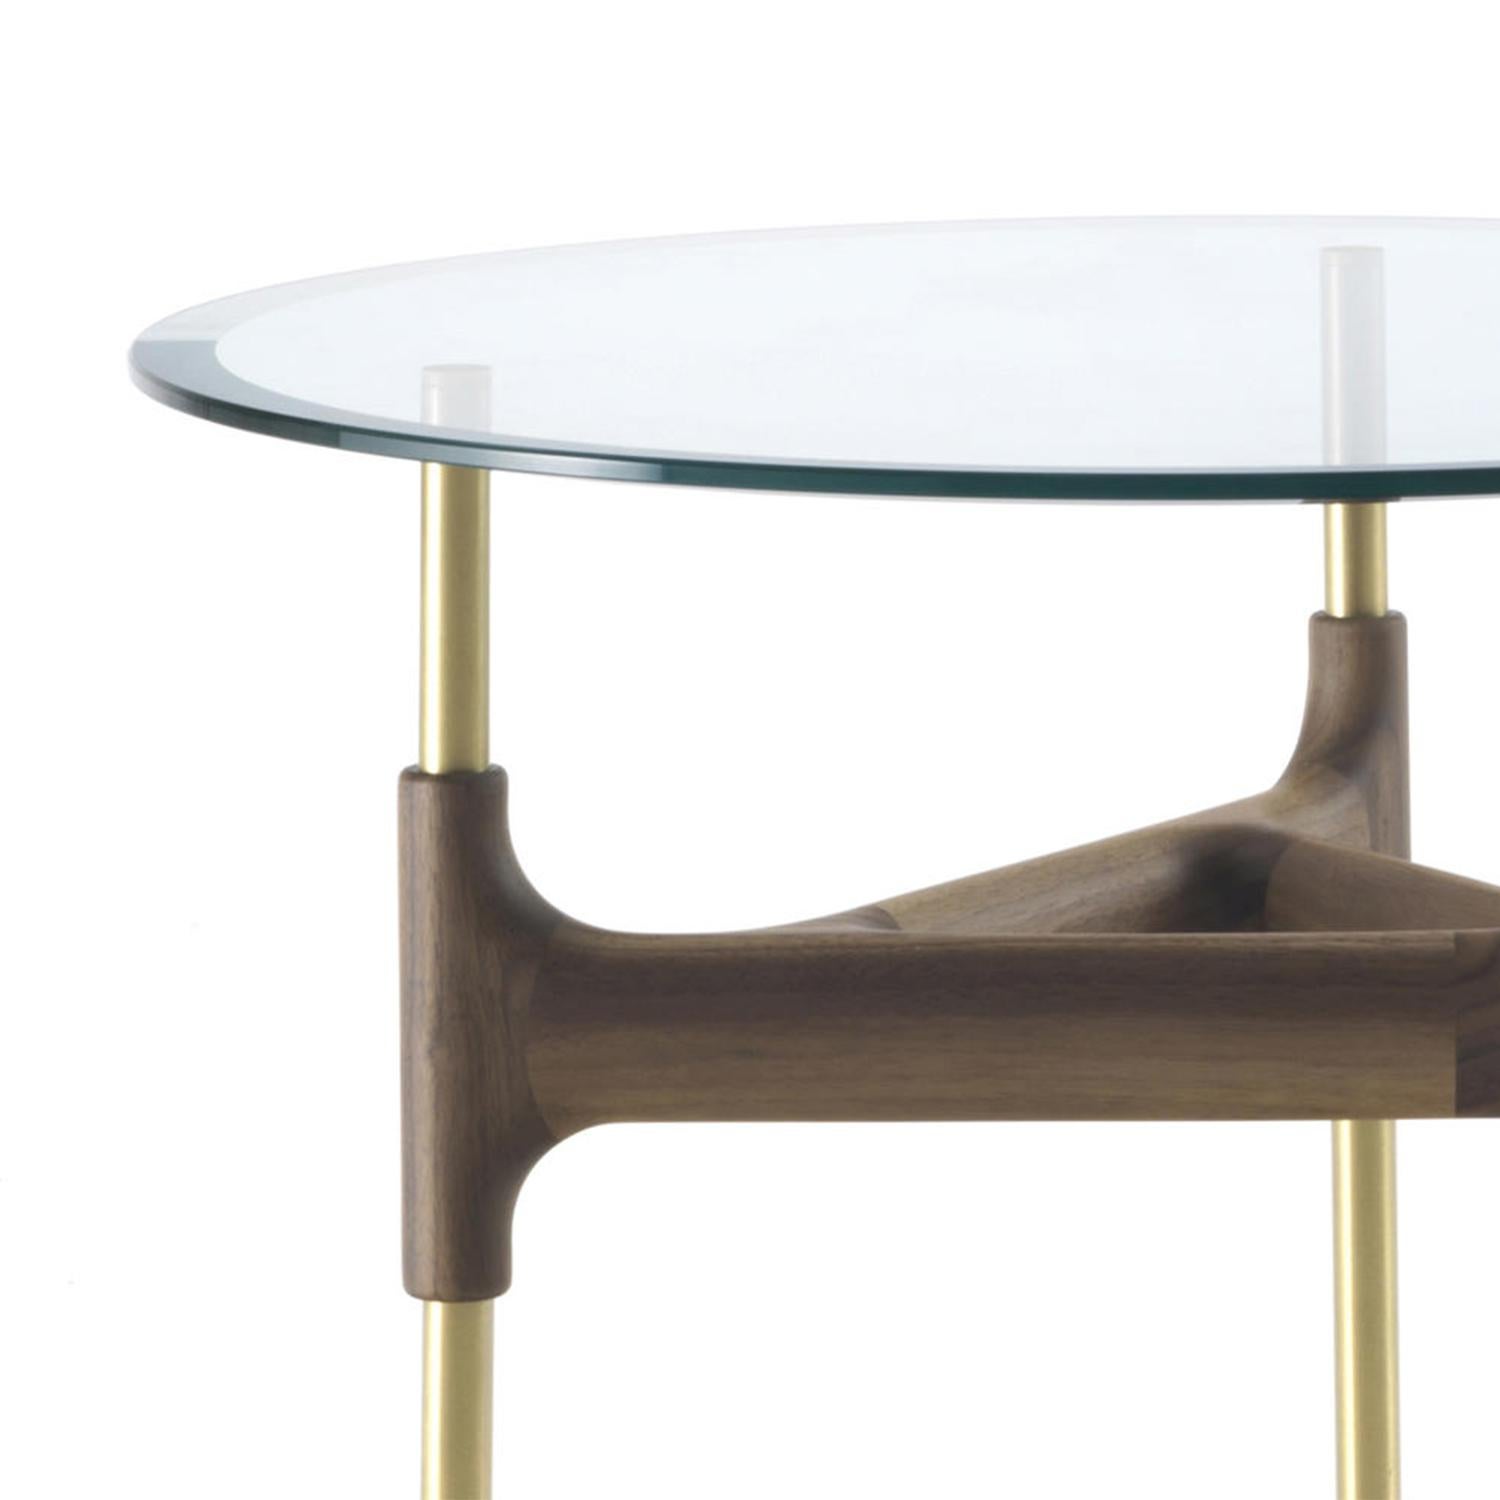 Table d'appoint en verre paloma avec objets artisanaux
base en noyer massif avec pieds en acier en finition laiton.
Avec plateau en verre trempé transparent biseauté, 12mm
épaisseur.